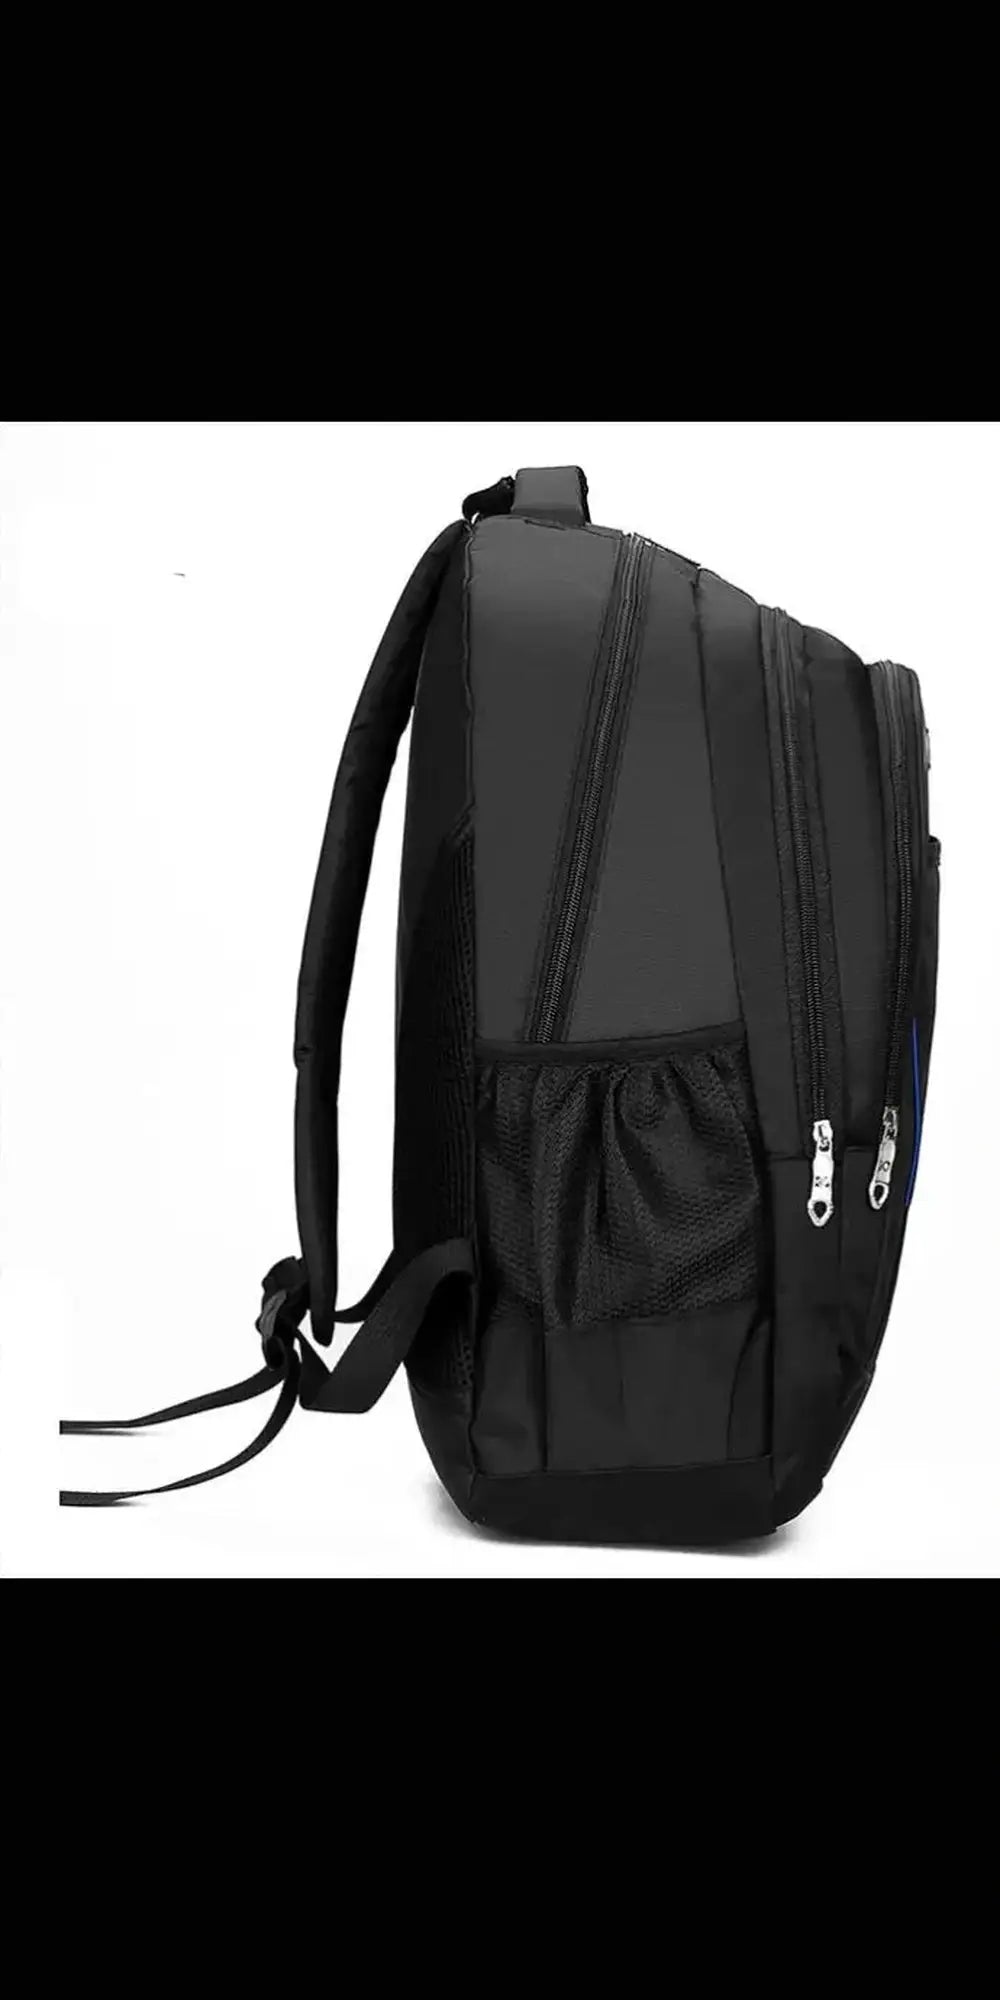 Backpack Men’s Leisure Backpack Backpack Student Schoolbag -